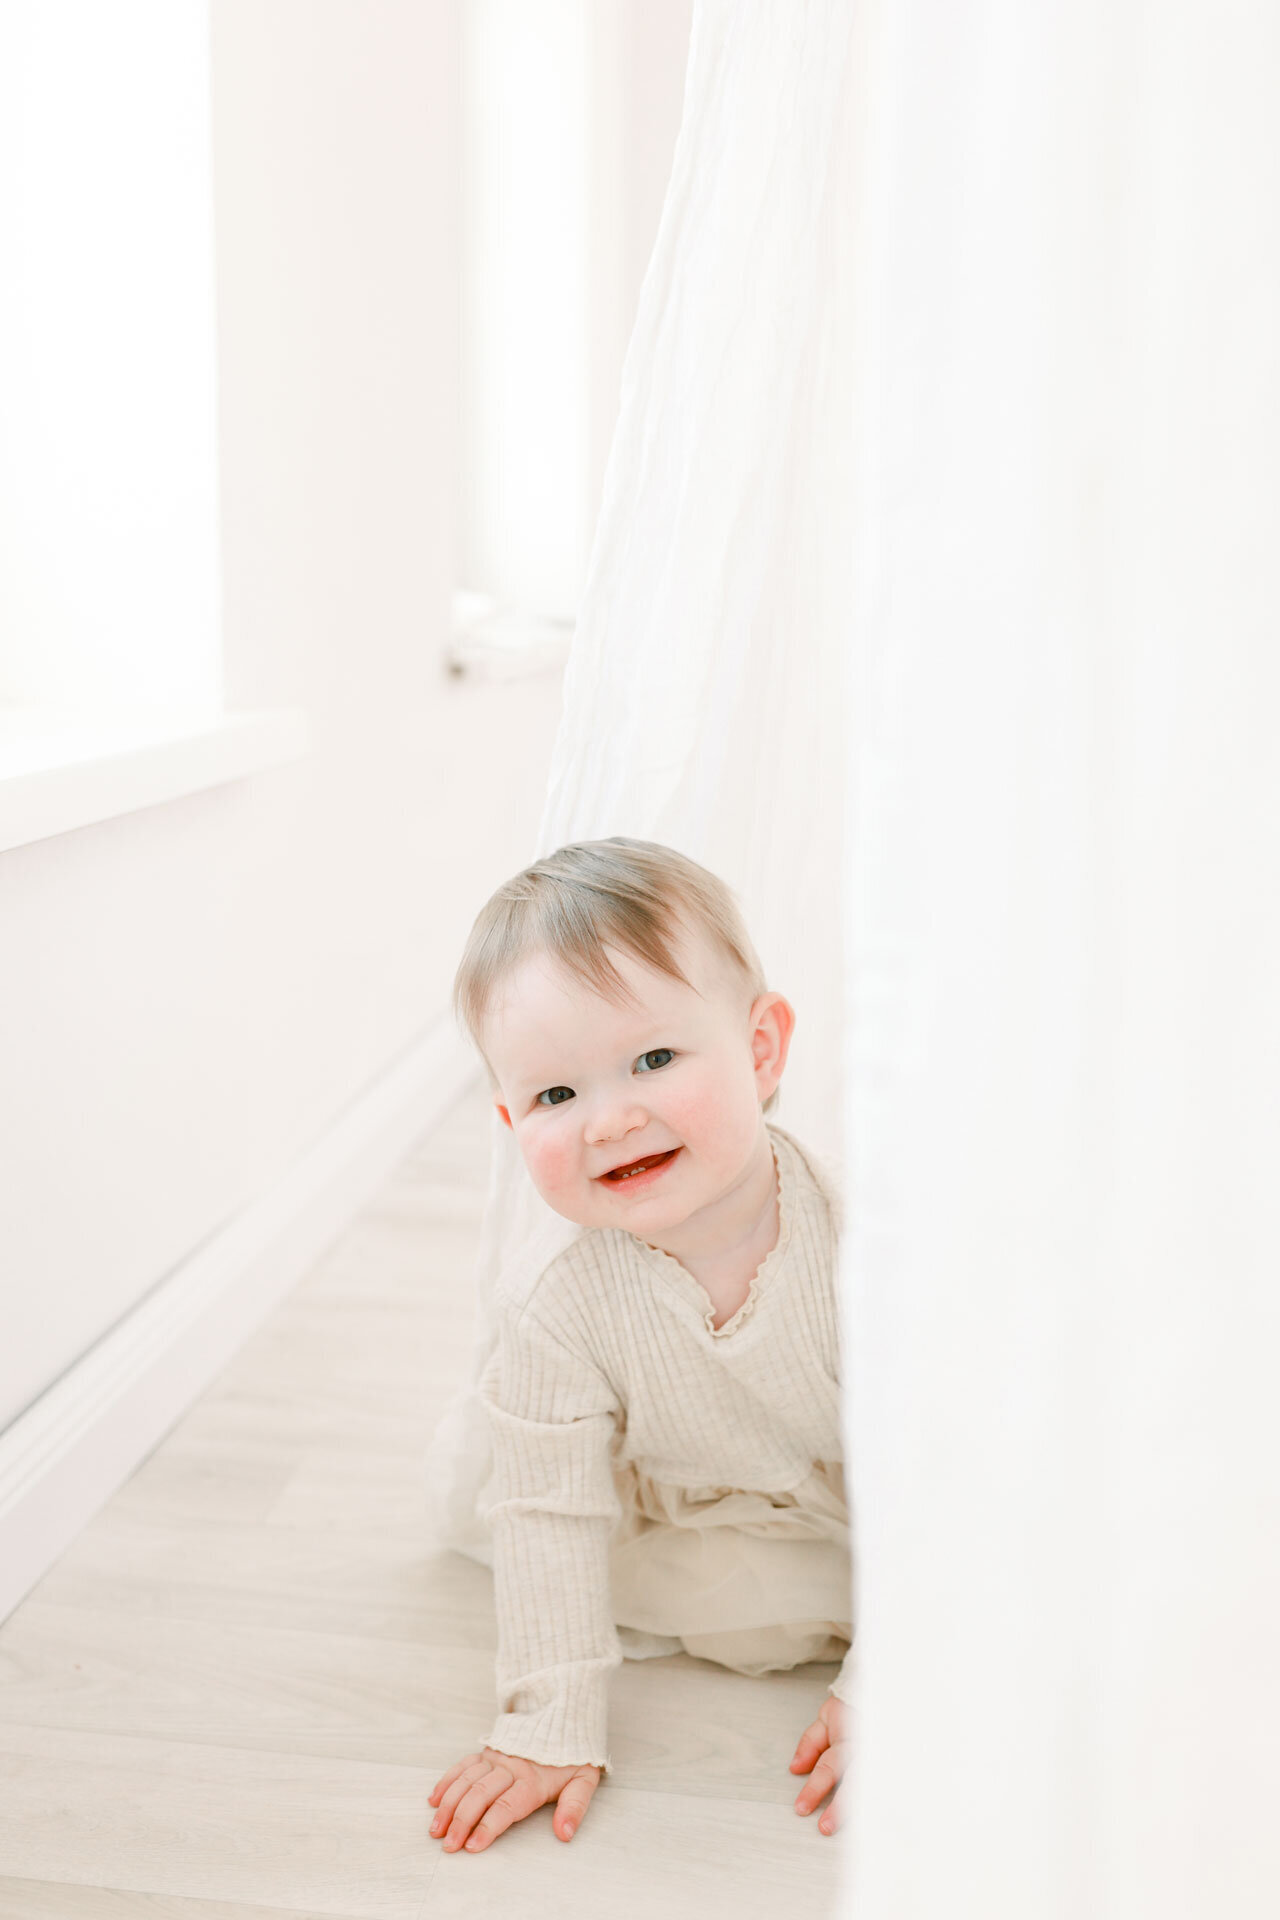 Ein verspieltes Baby, das lächelnd hinter einer weißen Tüllgardine hervorsieht. Entstanden bei einem Babyfotoshooting bei Babyfotografin Bielefeld.